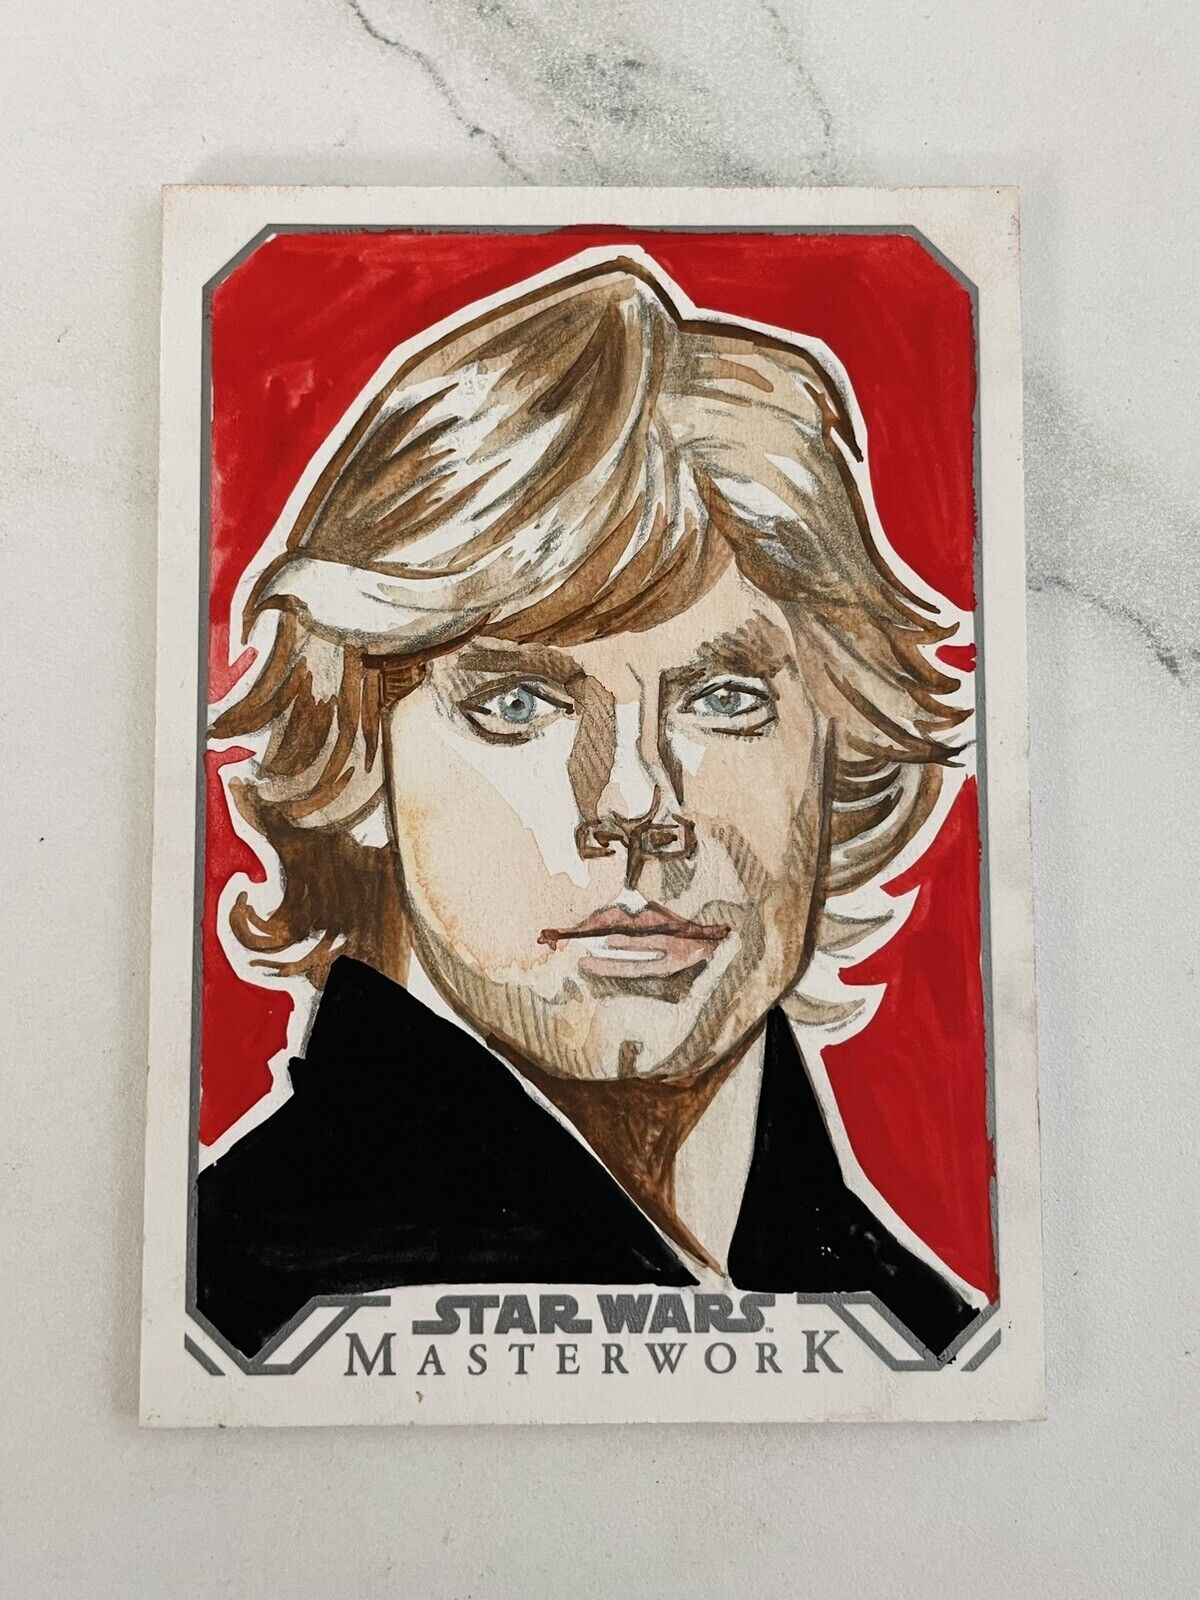 Topps Star Wars Masterwork Luke Skywalker Sketch Card NM 1/1 Tina Berardi 2016